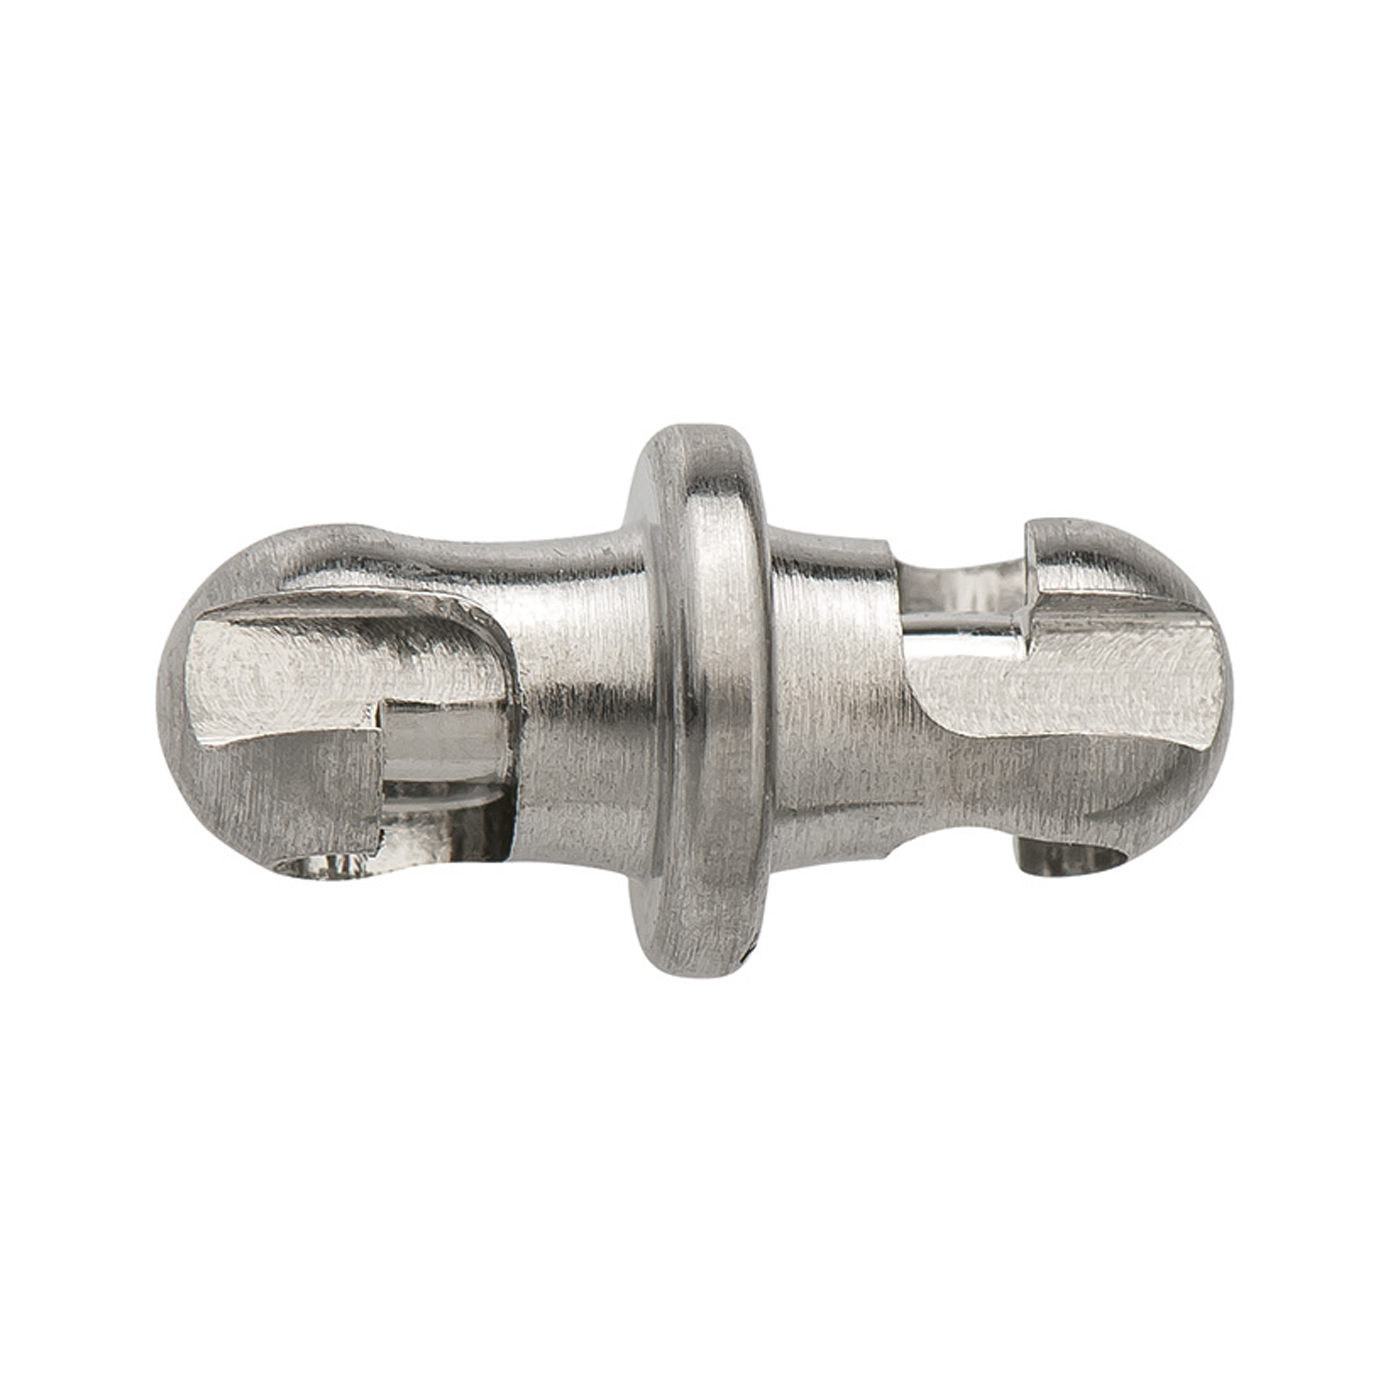 Adapterschlüssel, ES, ø 4 mm, für Kugelkopf-Mechanik - 1 Stück